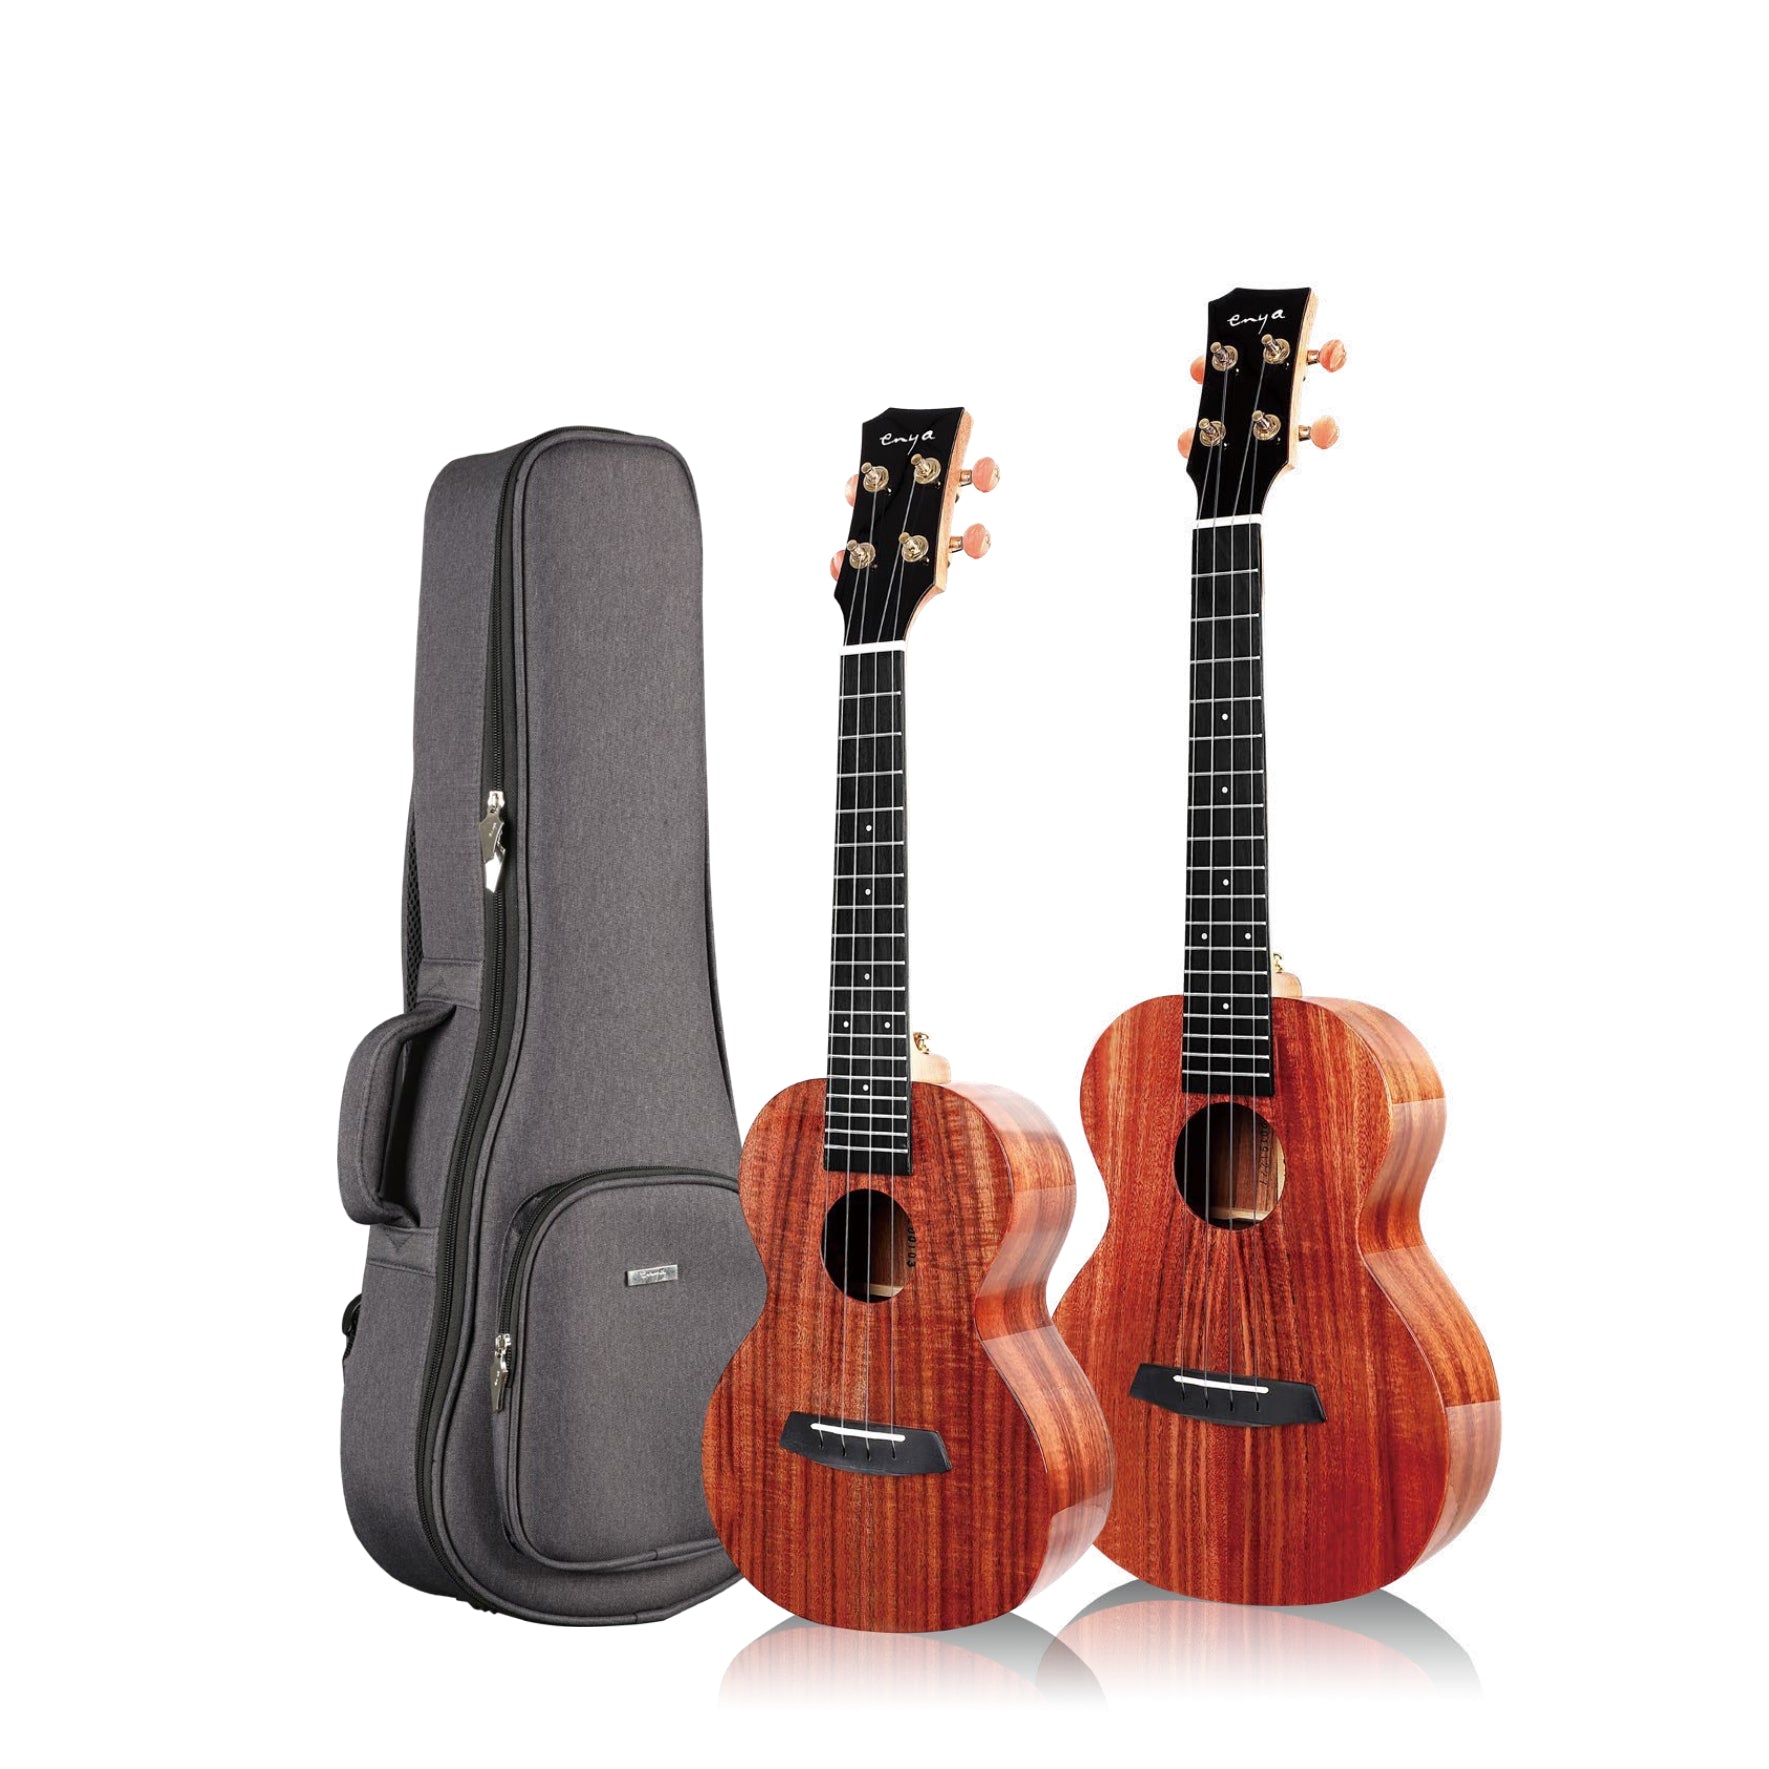 K1, Elite solid acacia wood ukulele